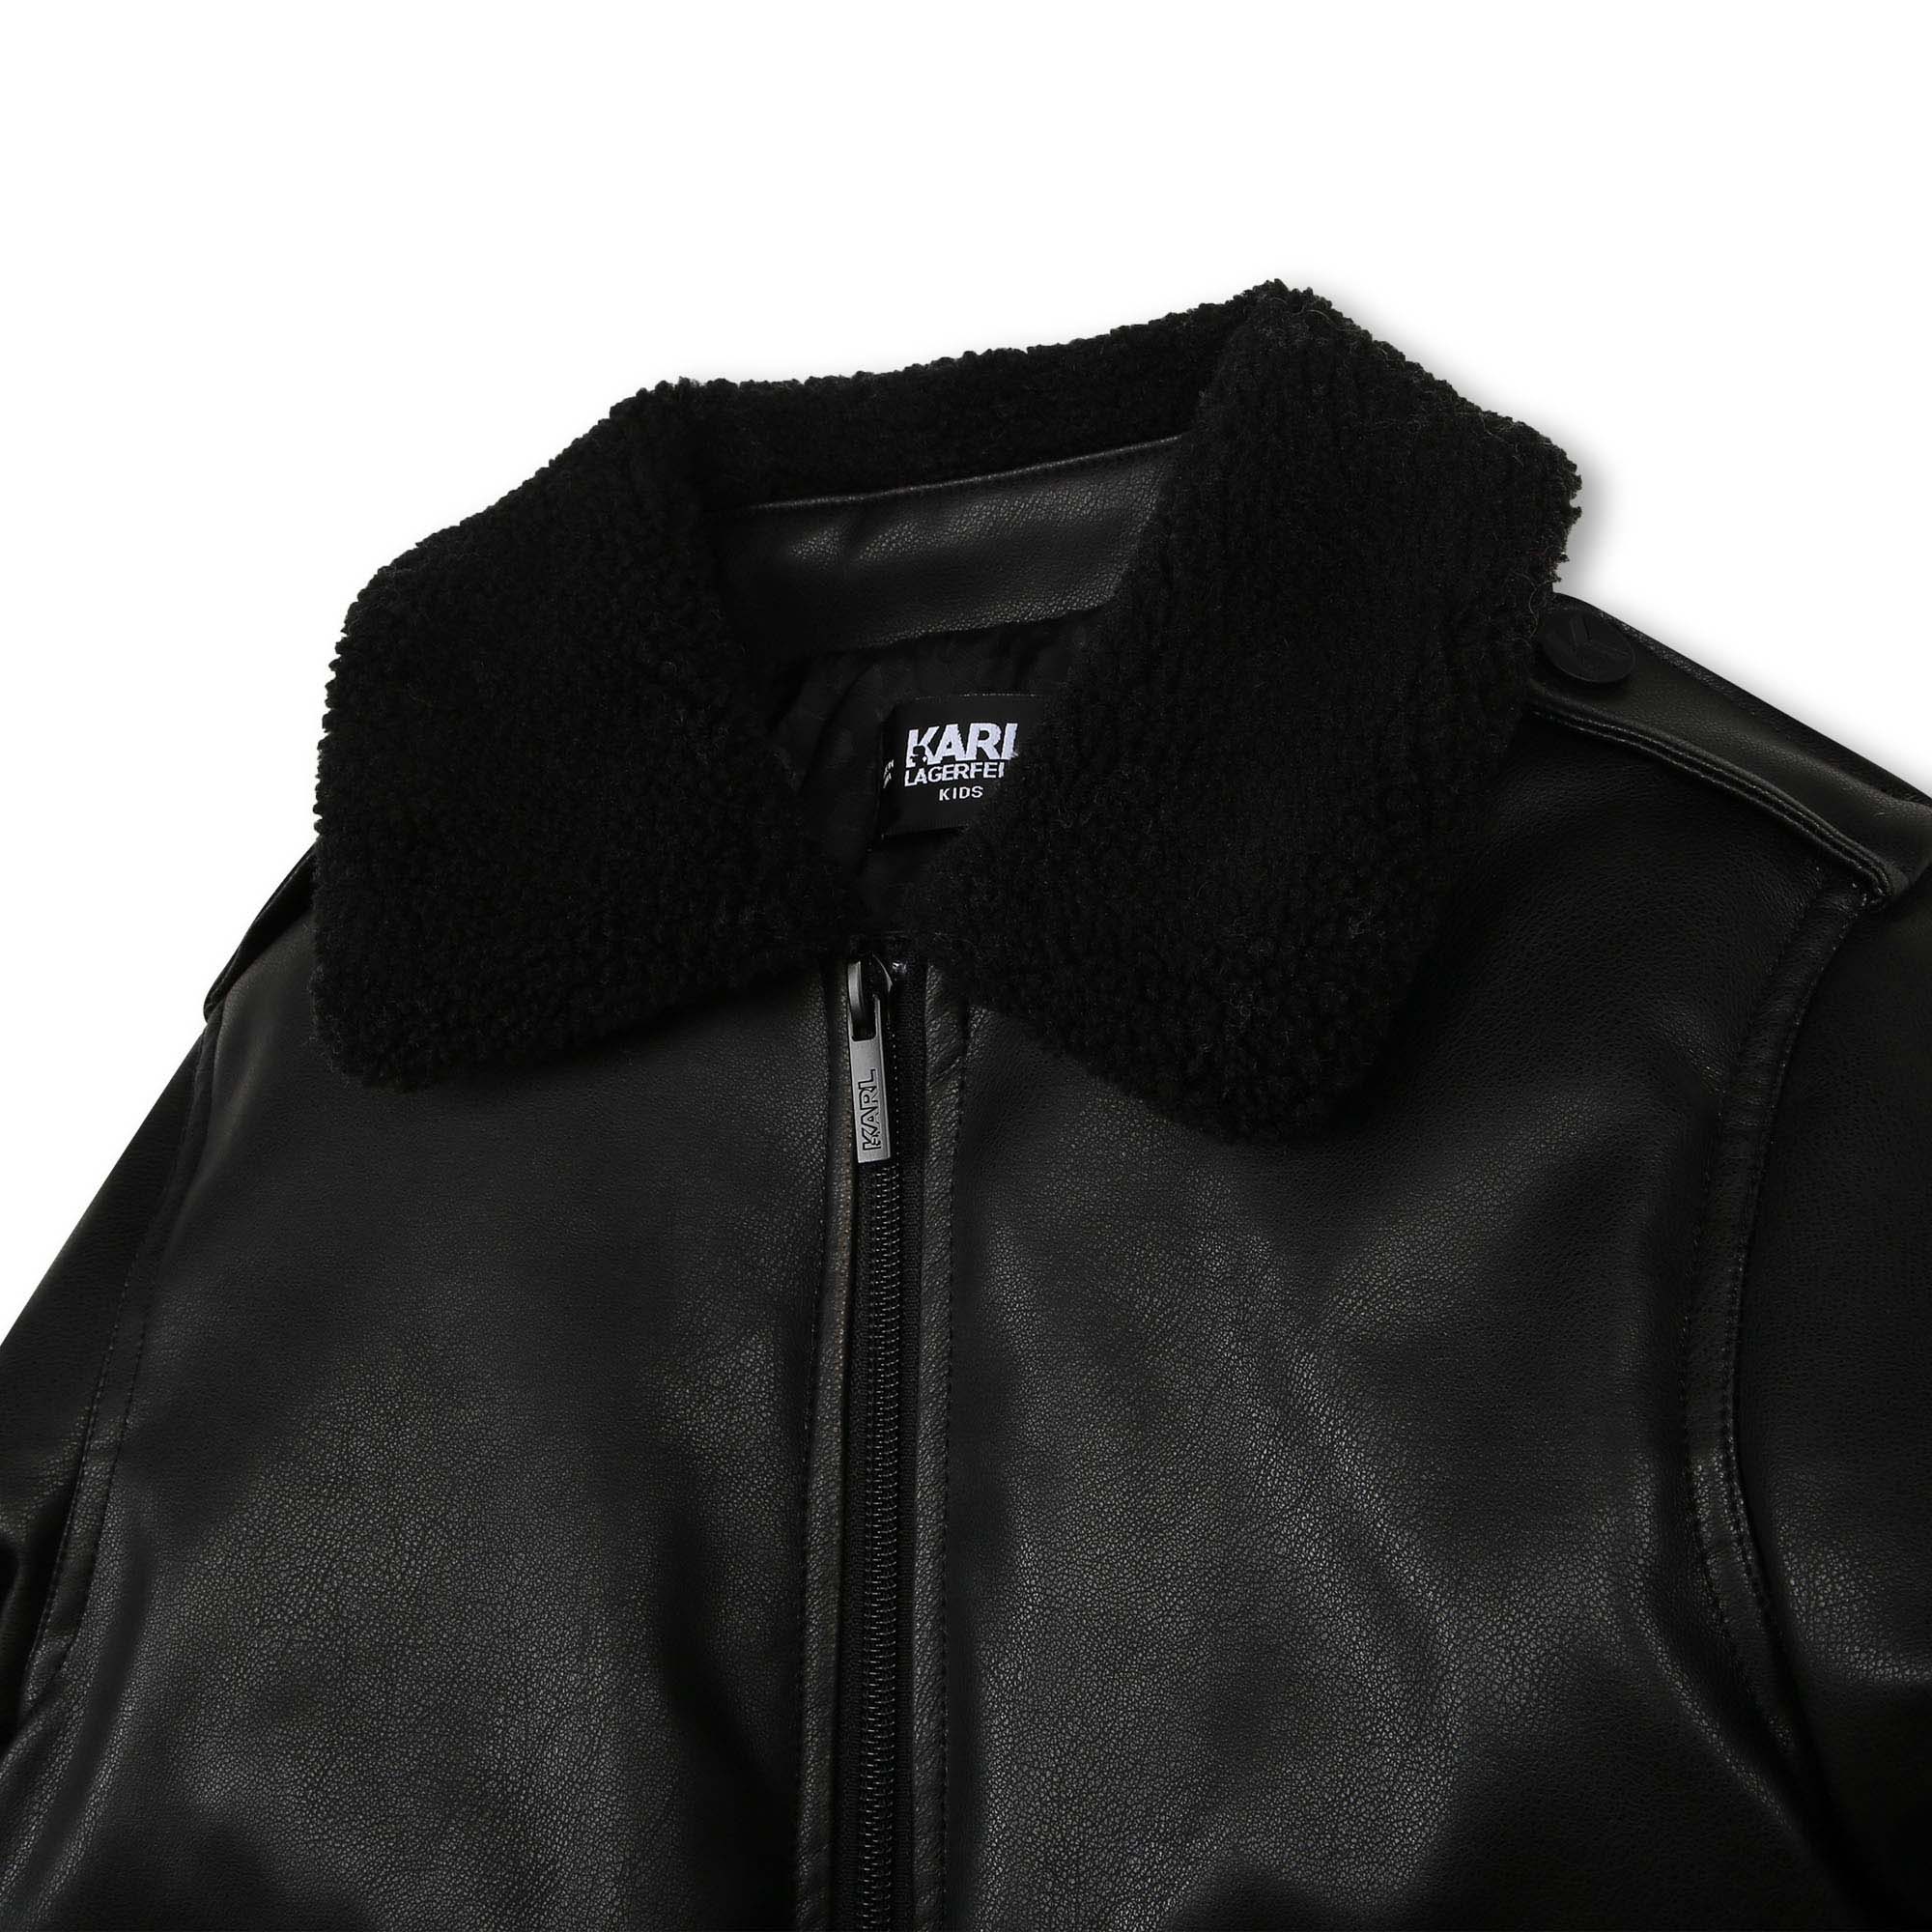 Karl Lagerfeld Paris Men's Full Zip Track Jacket Hoodie Sz M NWT | eBay